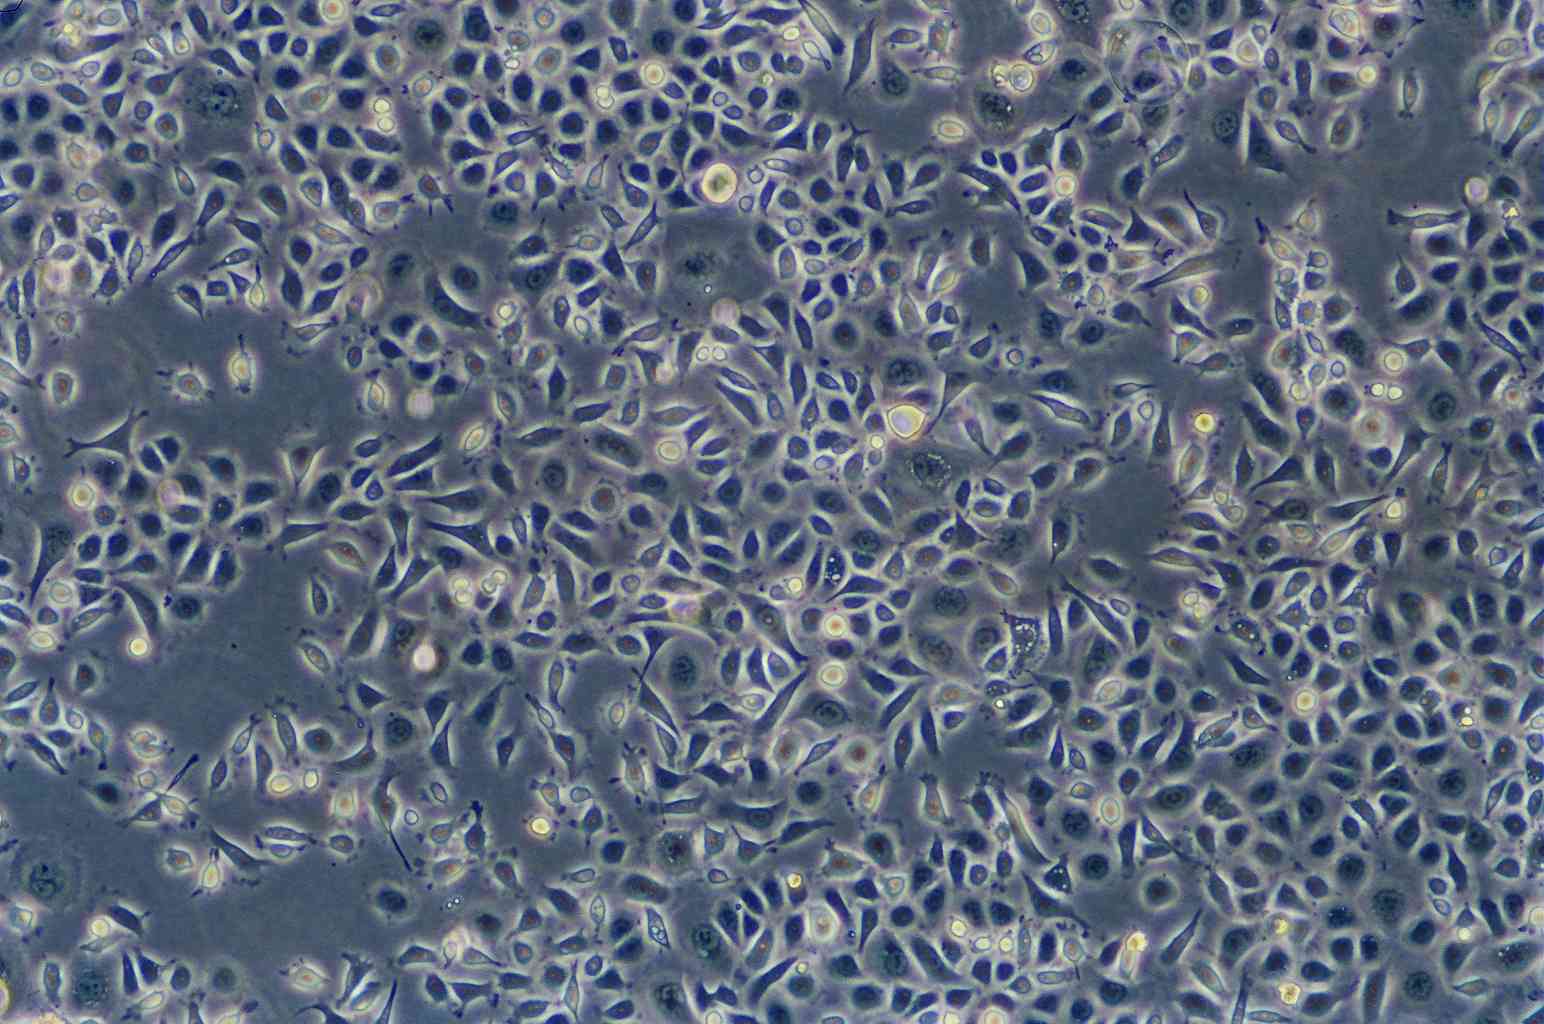 DK-MG人胶质母细胞瘤复苏细胞(附STR鉴定报告)